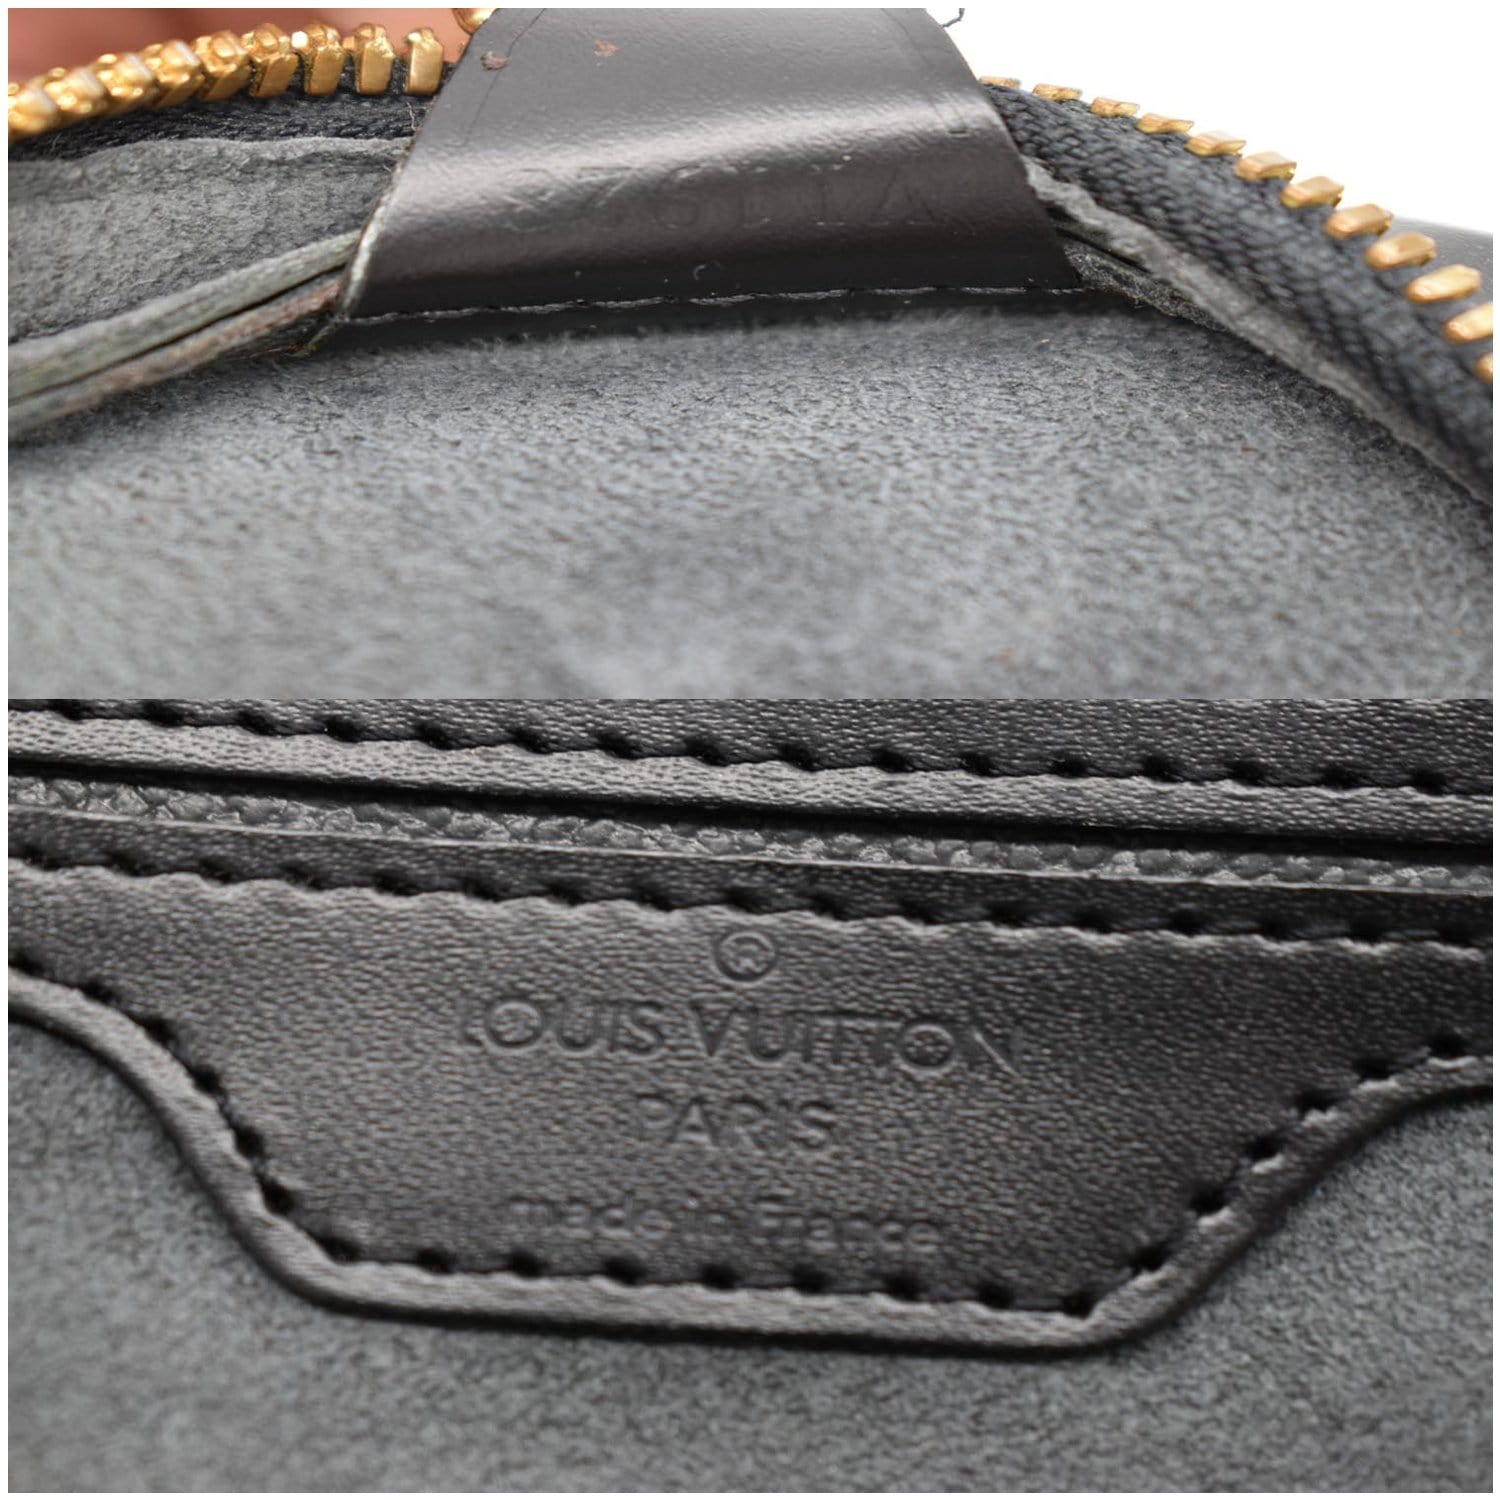 Louis Vuitton, Bags, Louis Vuitton Mabillon 865698 Epi Leather Backpack